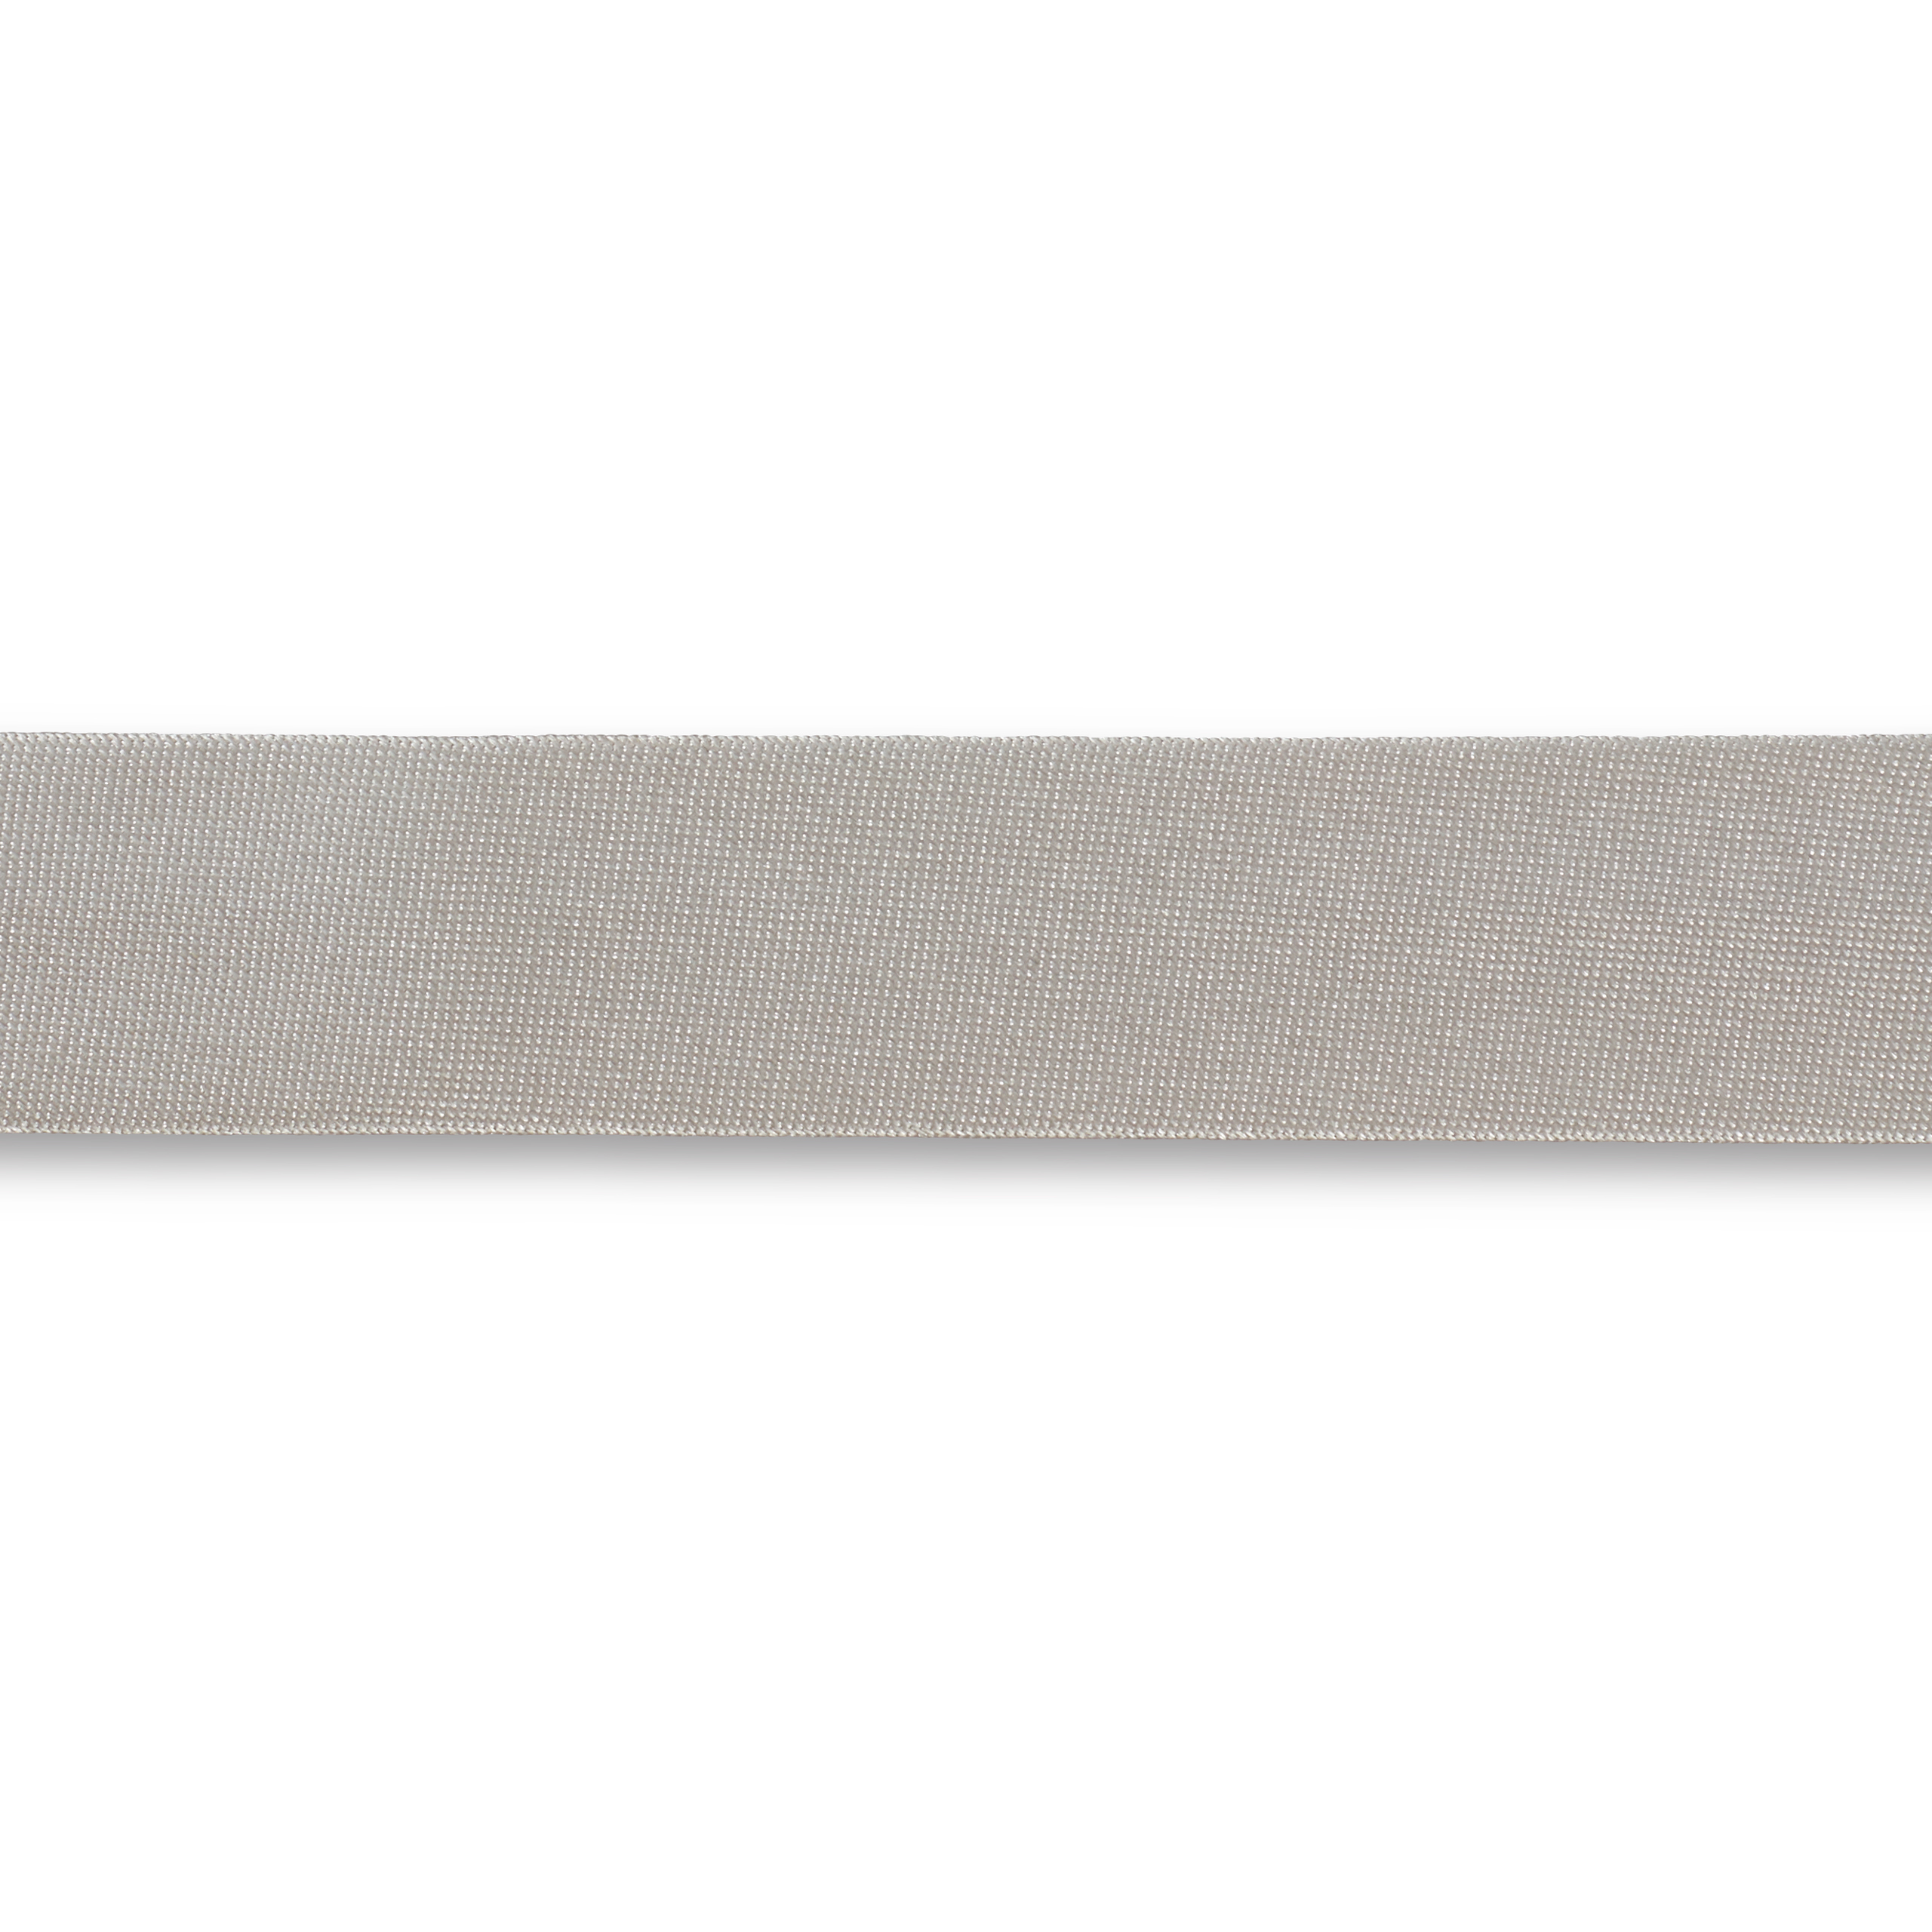 Schrägband Duchesse 40/20 mm silbergrau, Meterware, Einfassband 